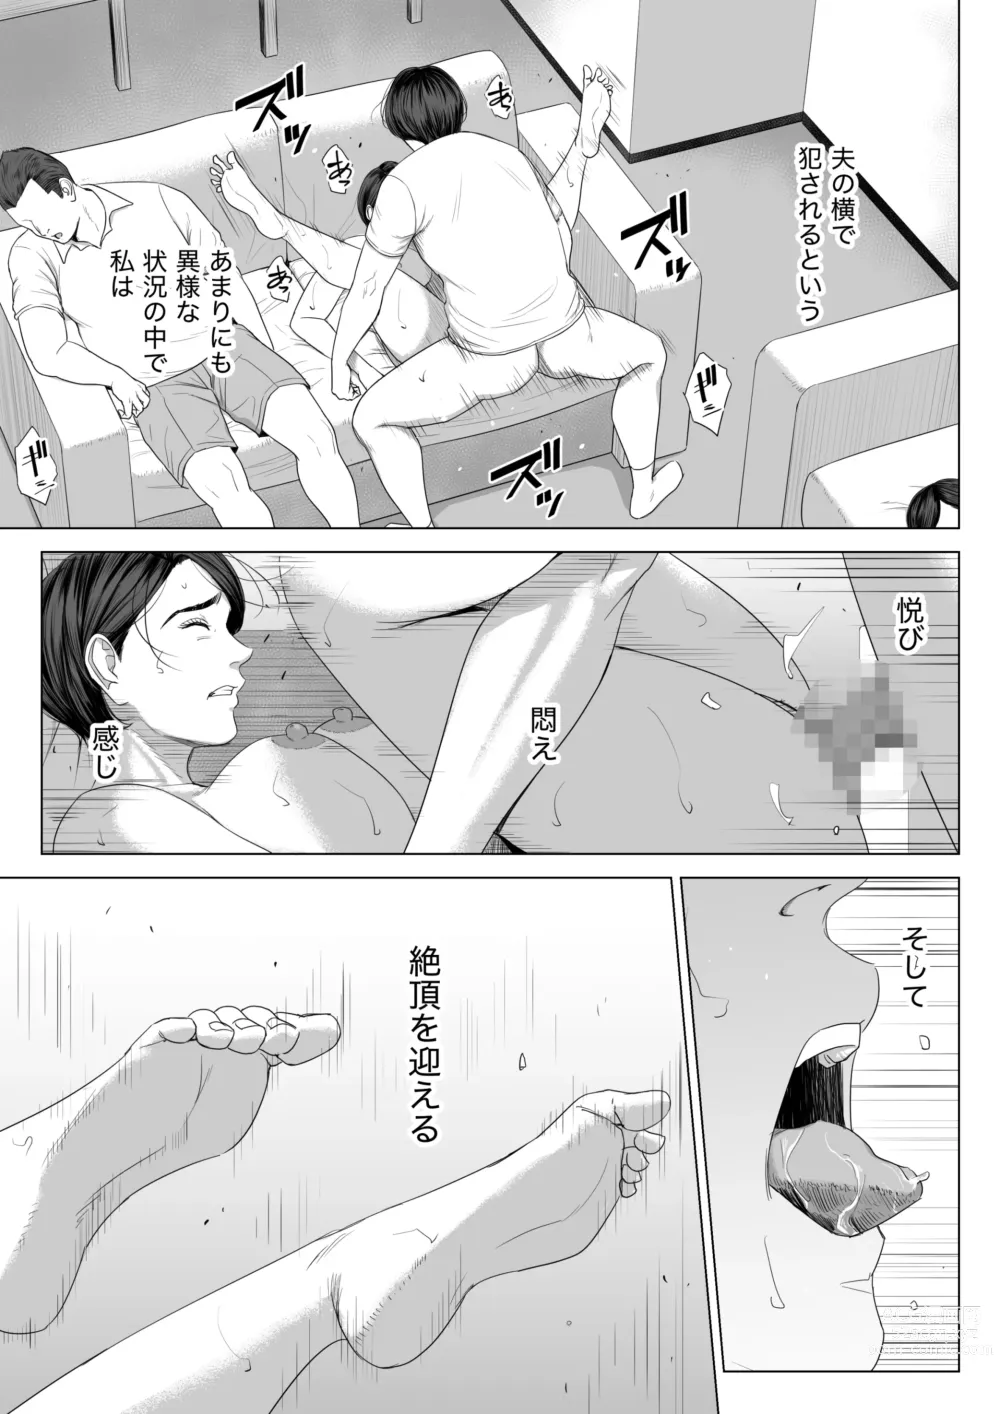 Page 72 of doujinshi Gibo no Tsukaeru Karada.